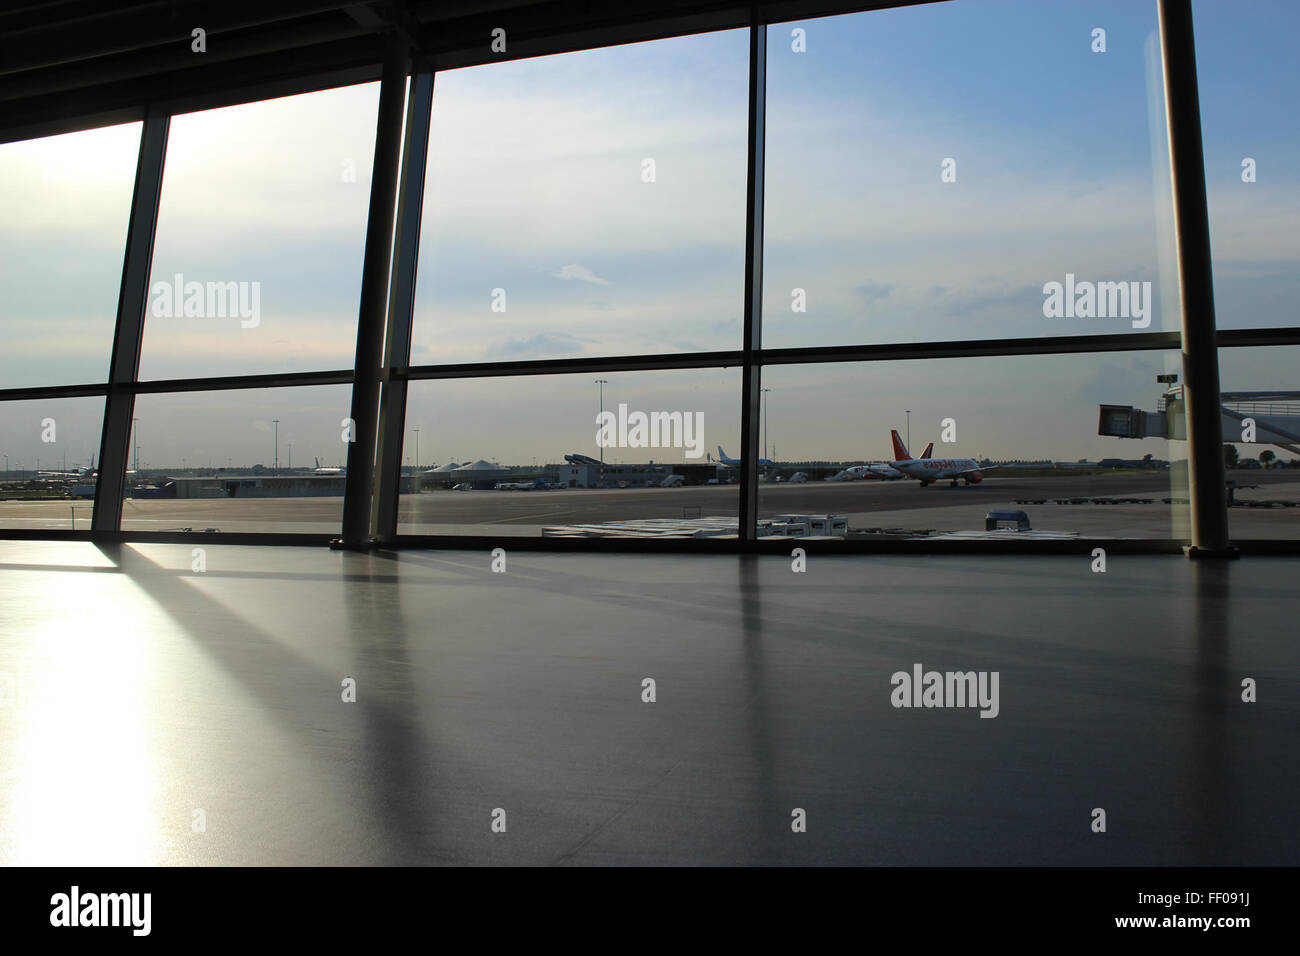 Compagnie aérienne Compagnie aérienne fenêtre de Terminal Windows Terminal Server Banque D'Images